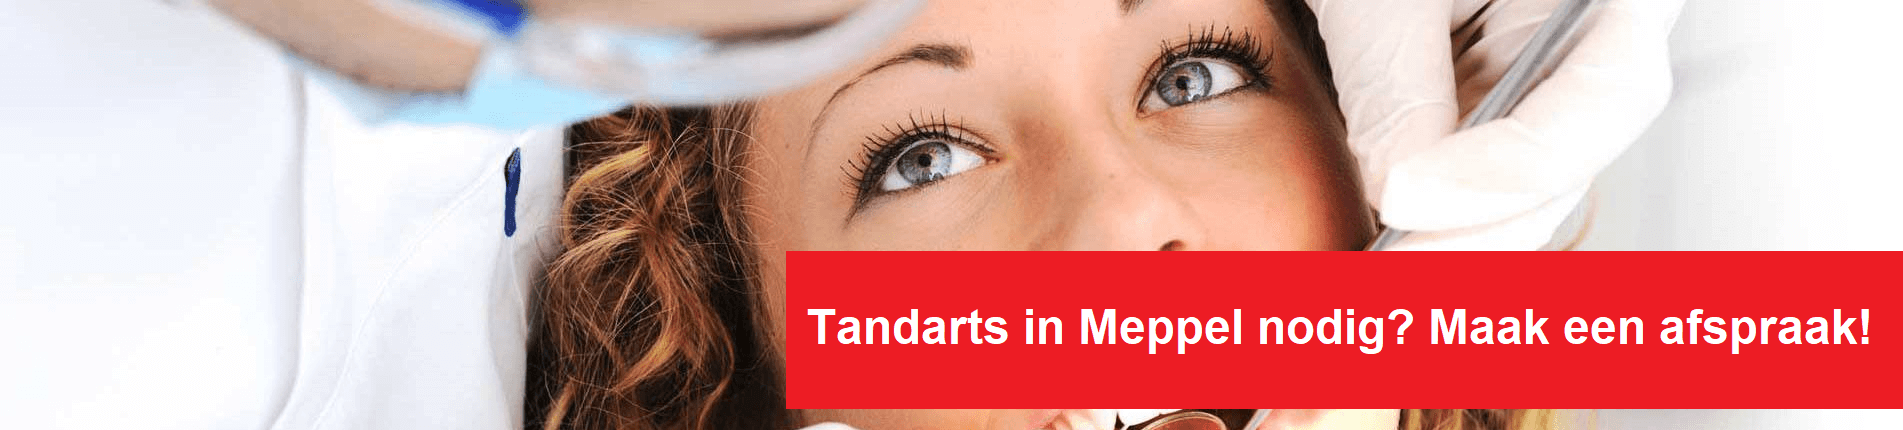 Tandarts Meppel